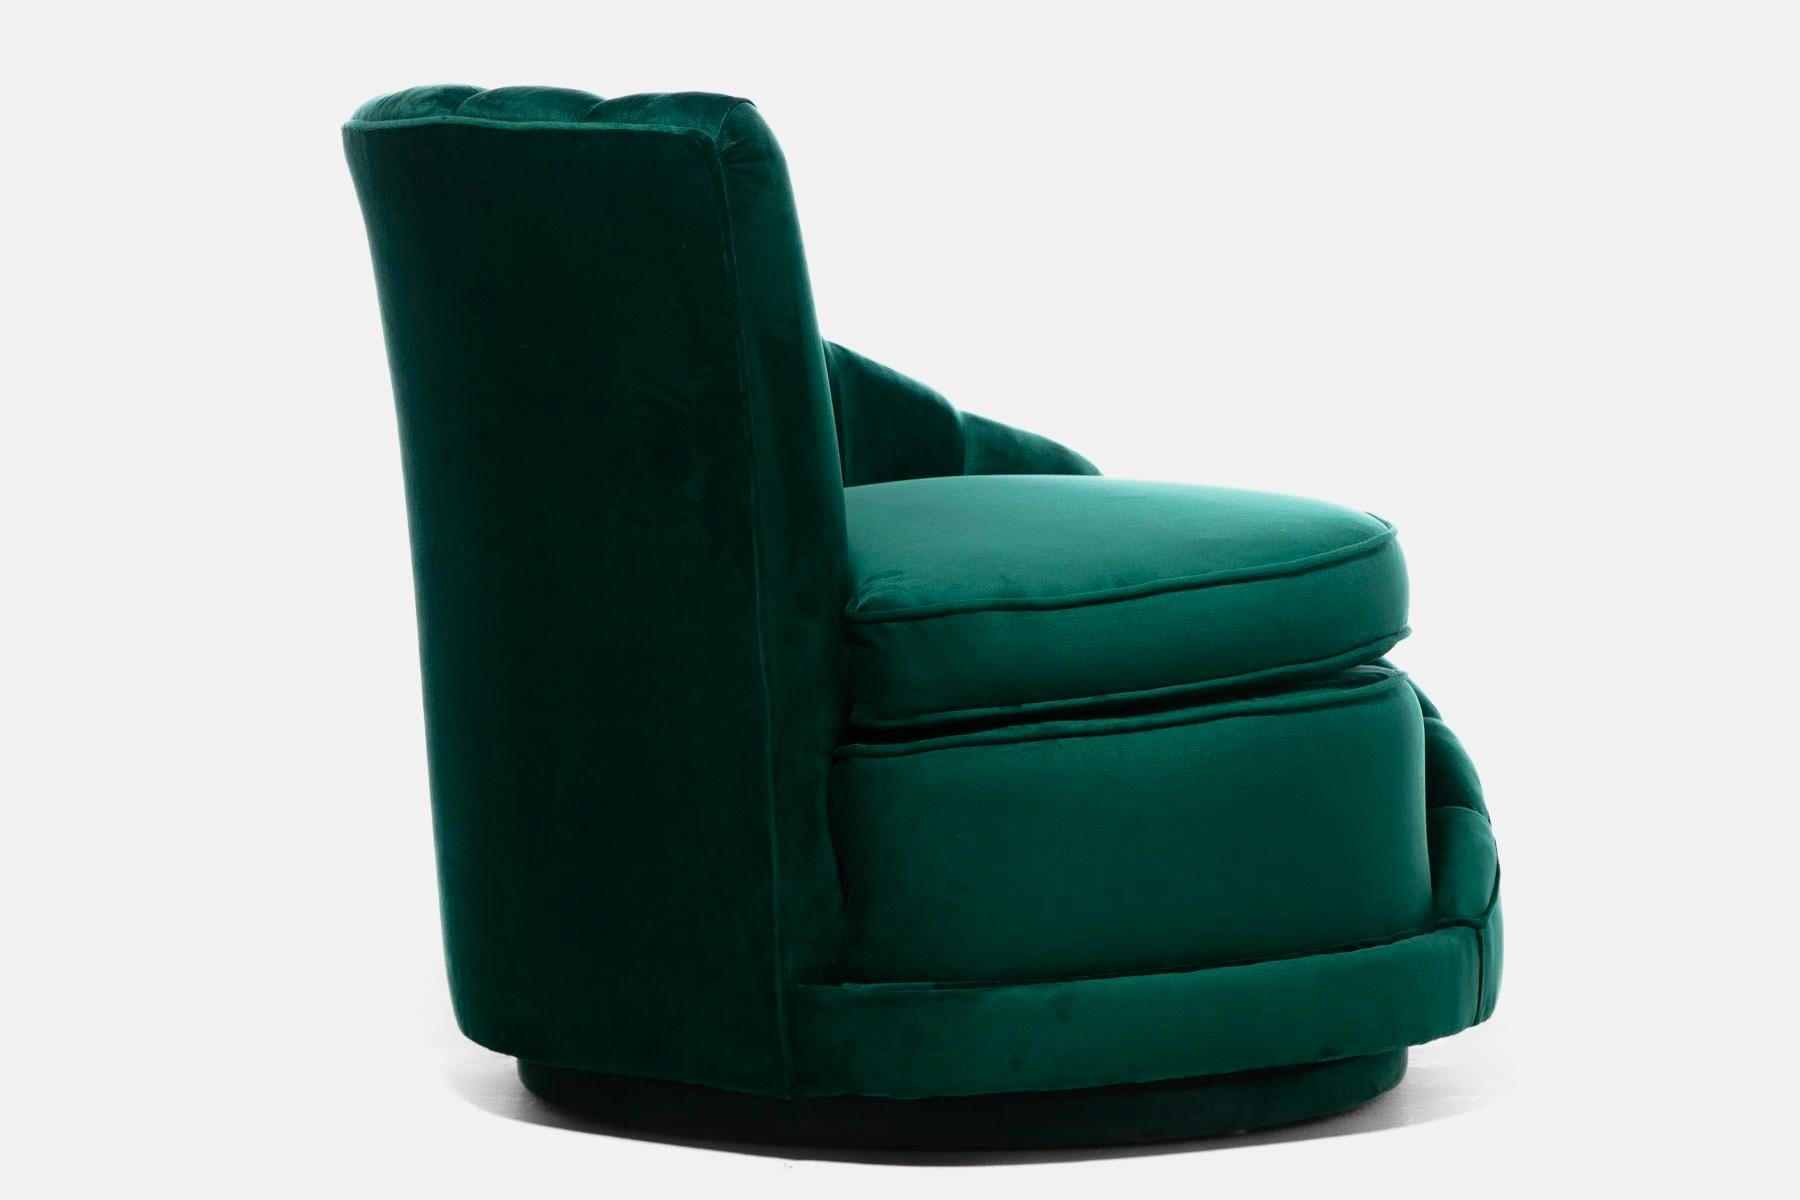 Hollywood Regency Glamorous Asymmetrical Swivel Chairs in Emerald Green Velvet For Sale 7